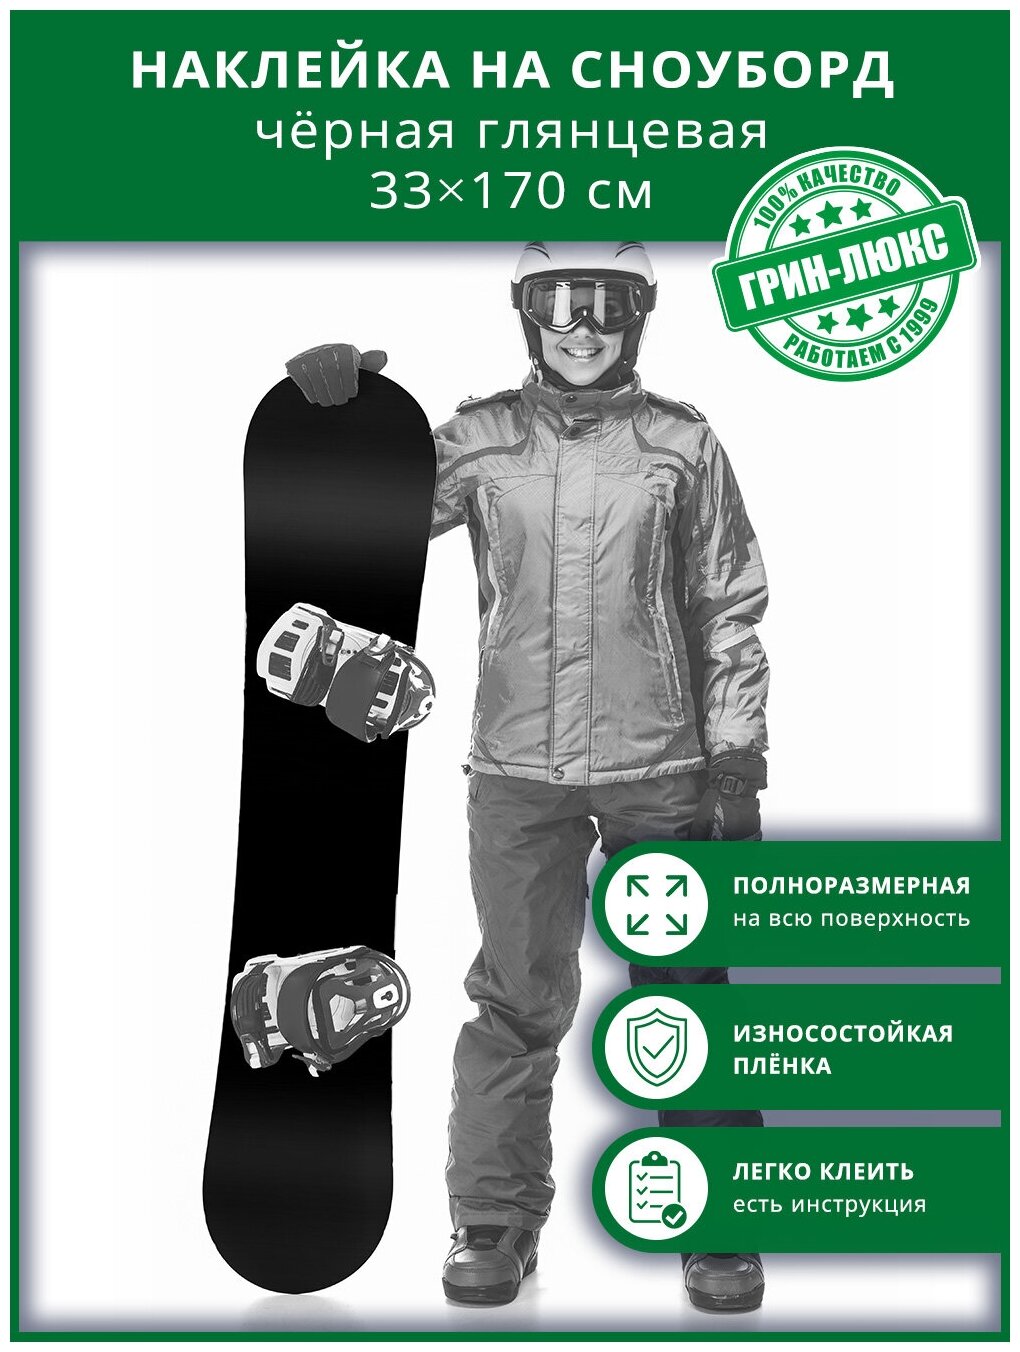 Наклейка на сноуборд 33х170 см “Чёрная глянцевая”